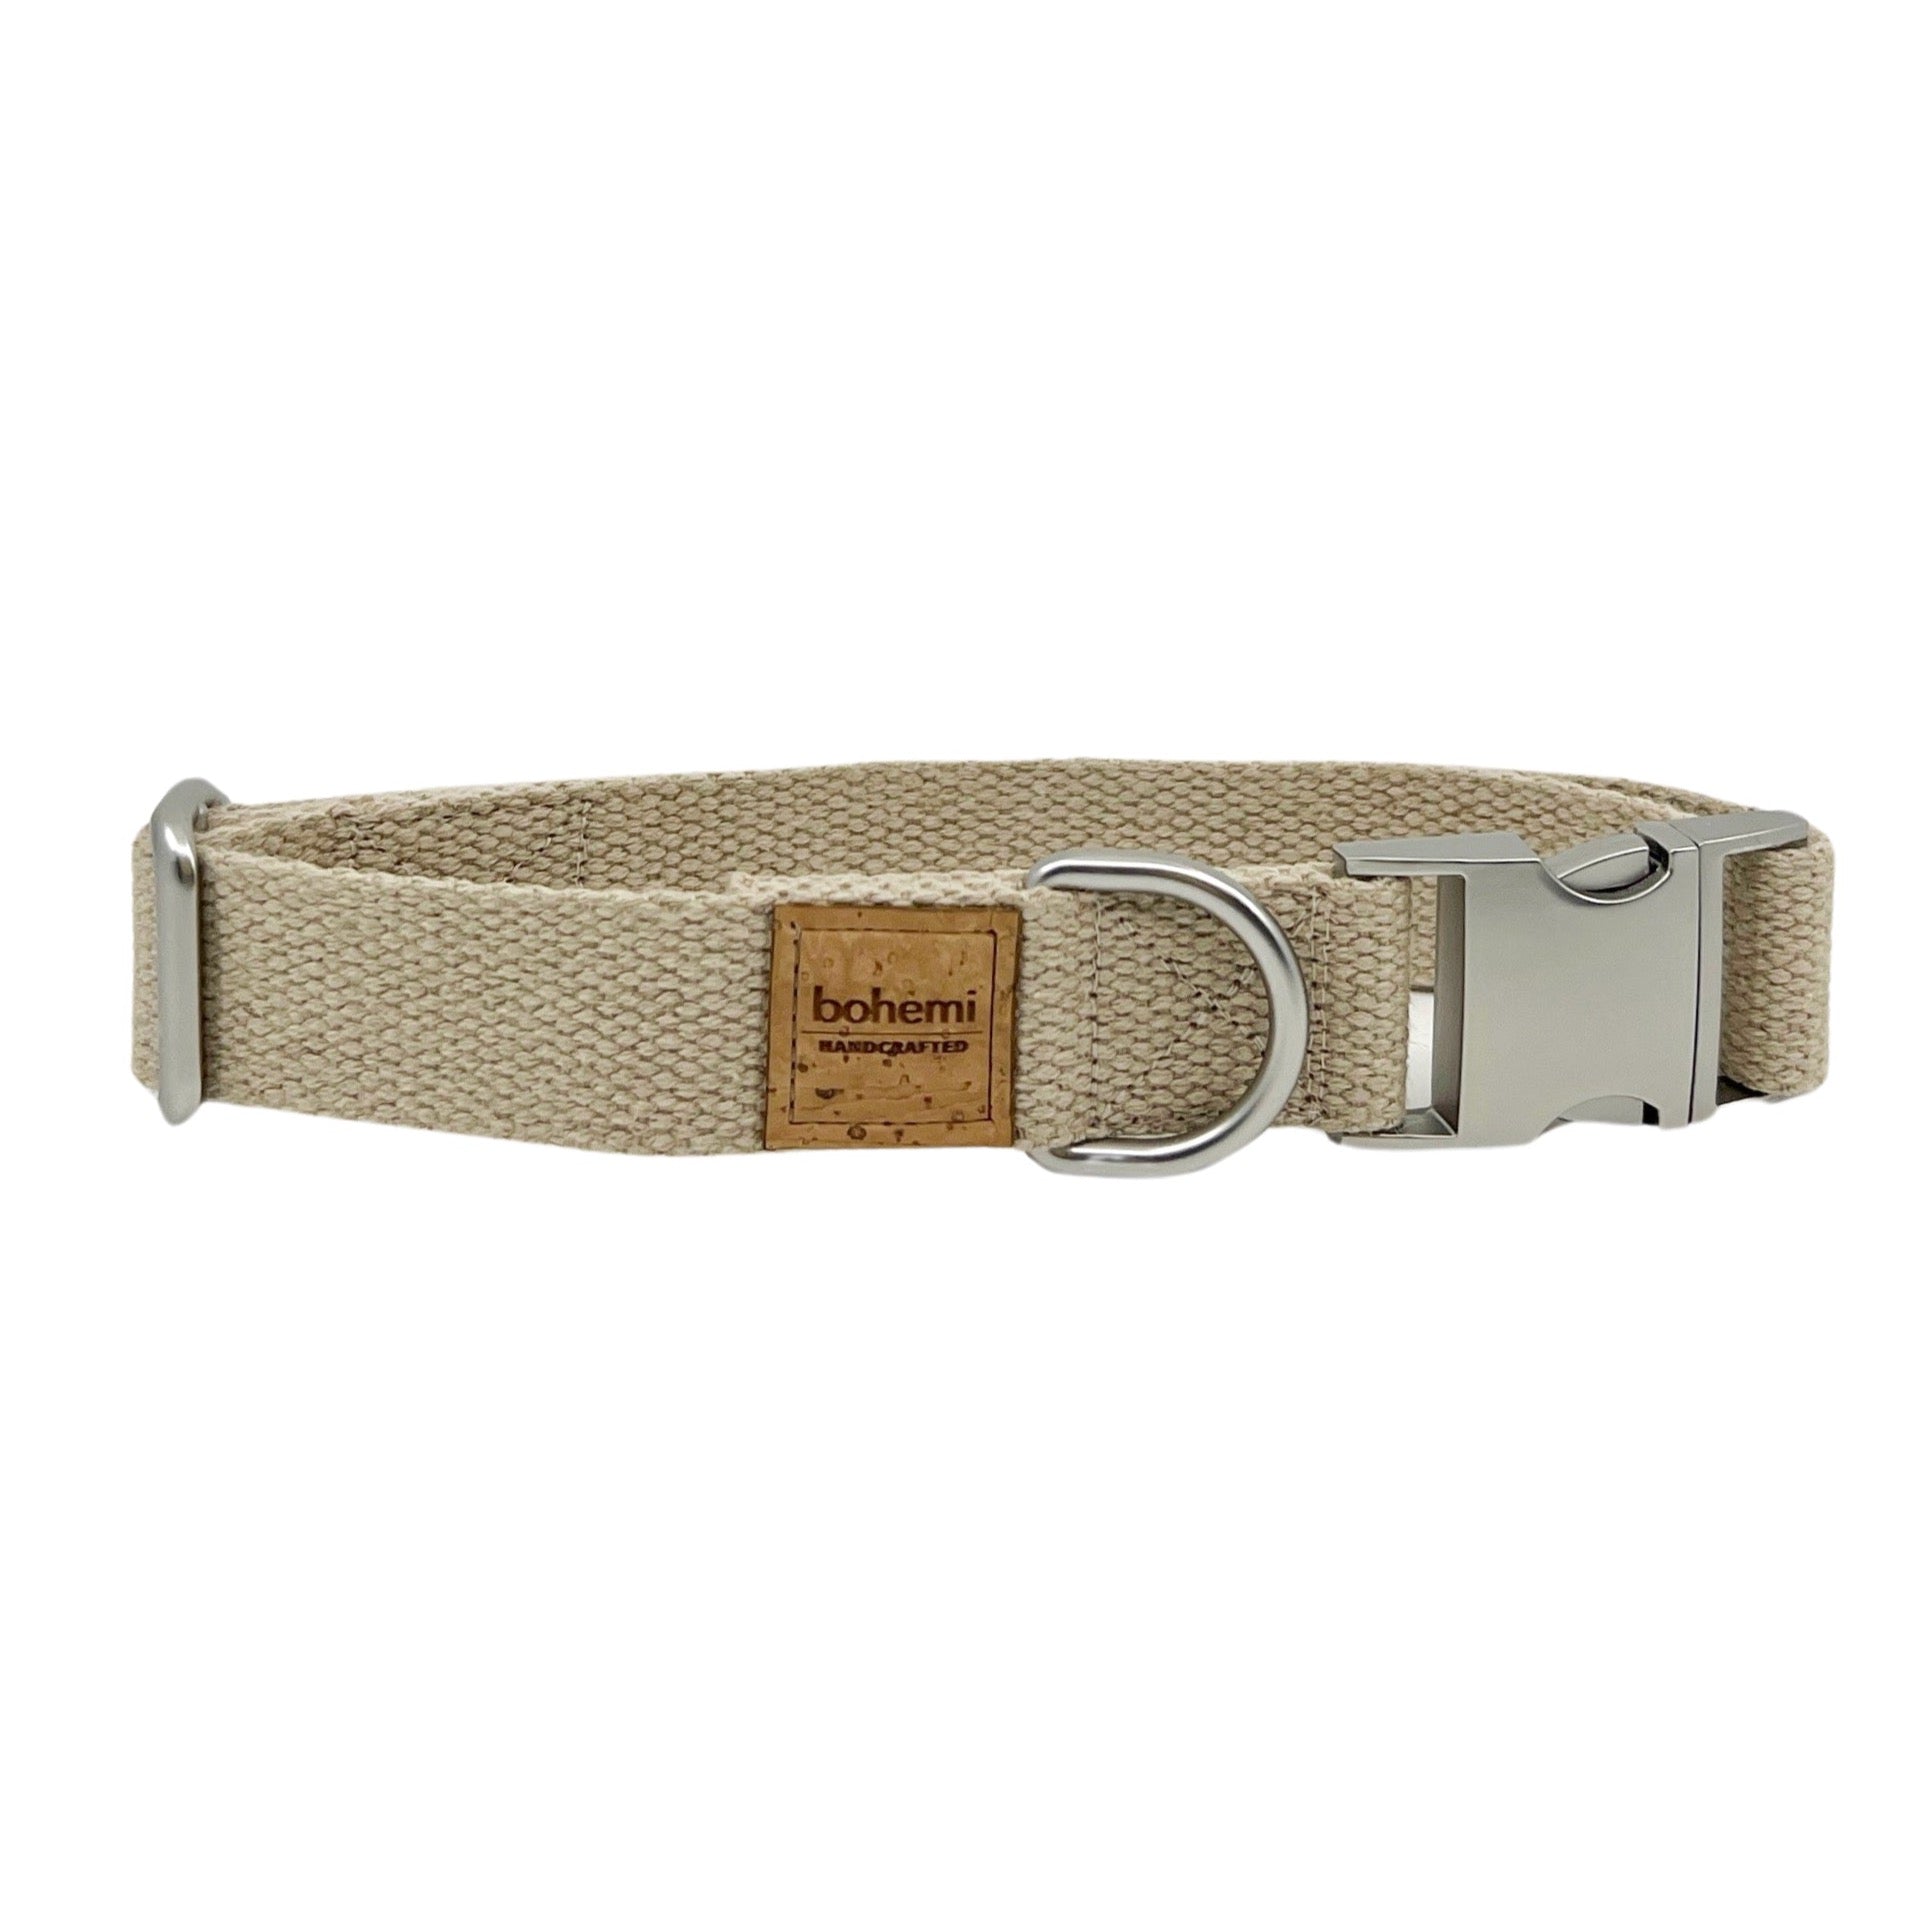 Durable Hemp Dog Collar ~ Matte Silver - Bohemi